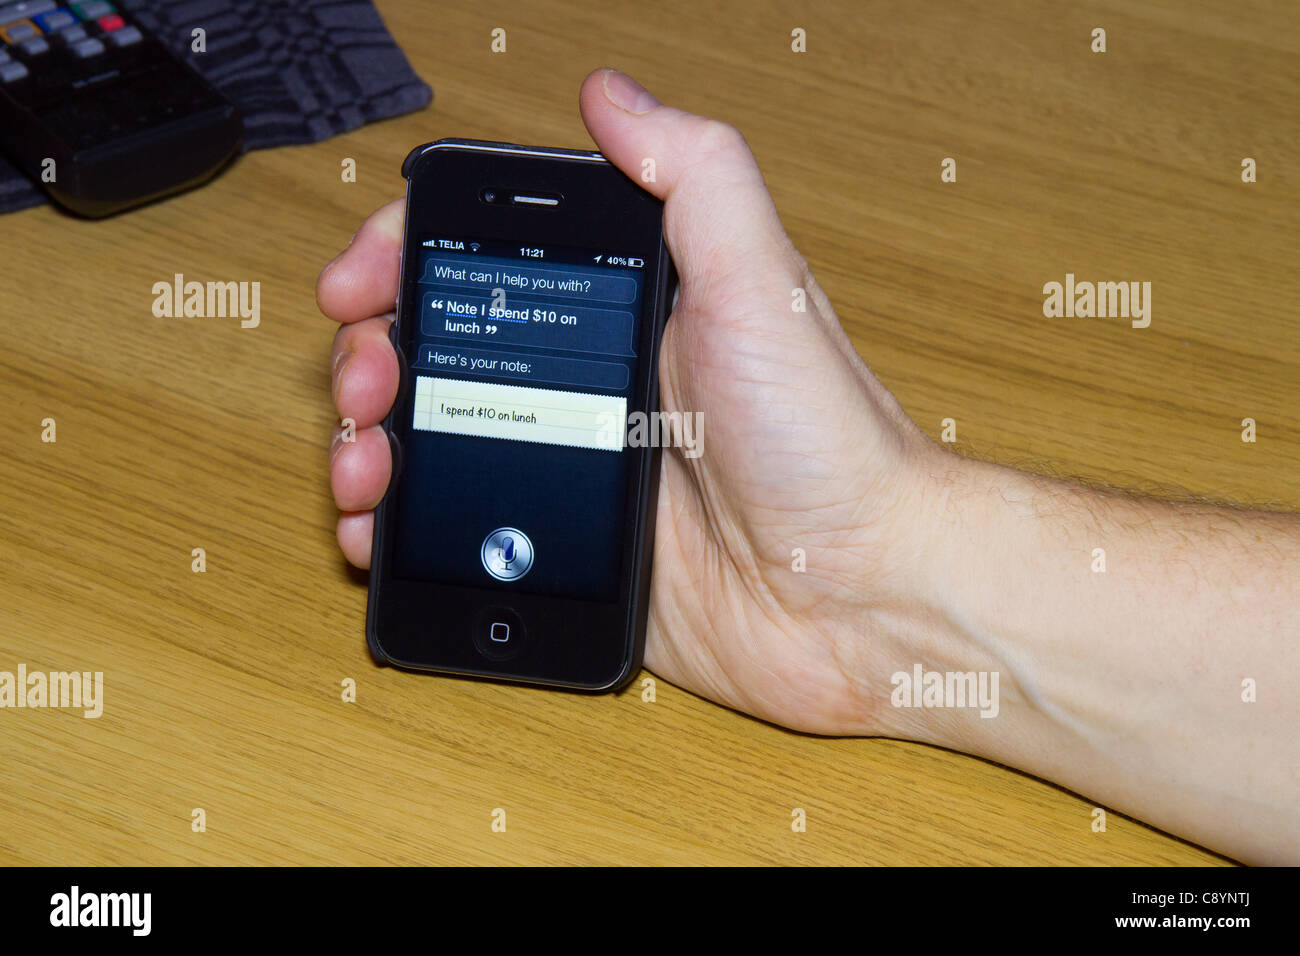 Utilizzando Siri personal assistant applicazione su un iPhone 4S utilizzando Controllo vocale per effettuare una nota che il pranzo al costo di $ 10. Foto Stock